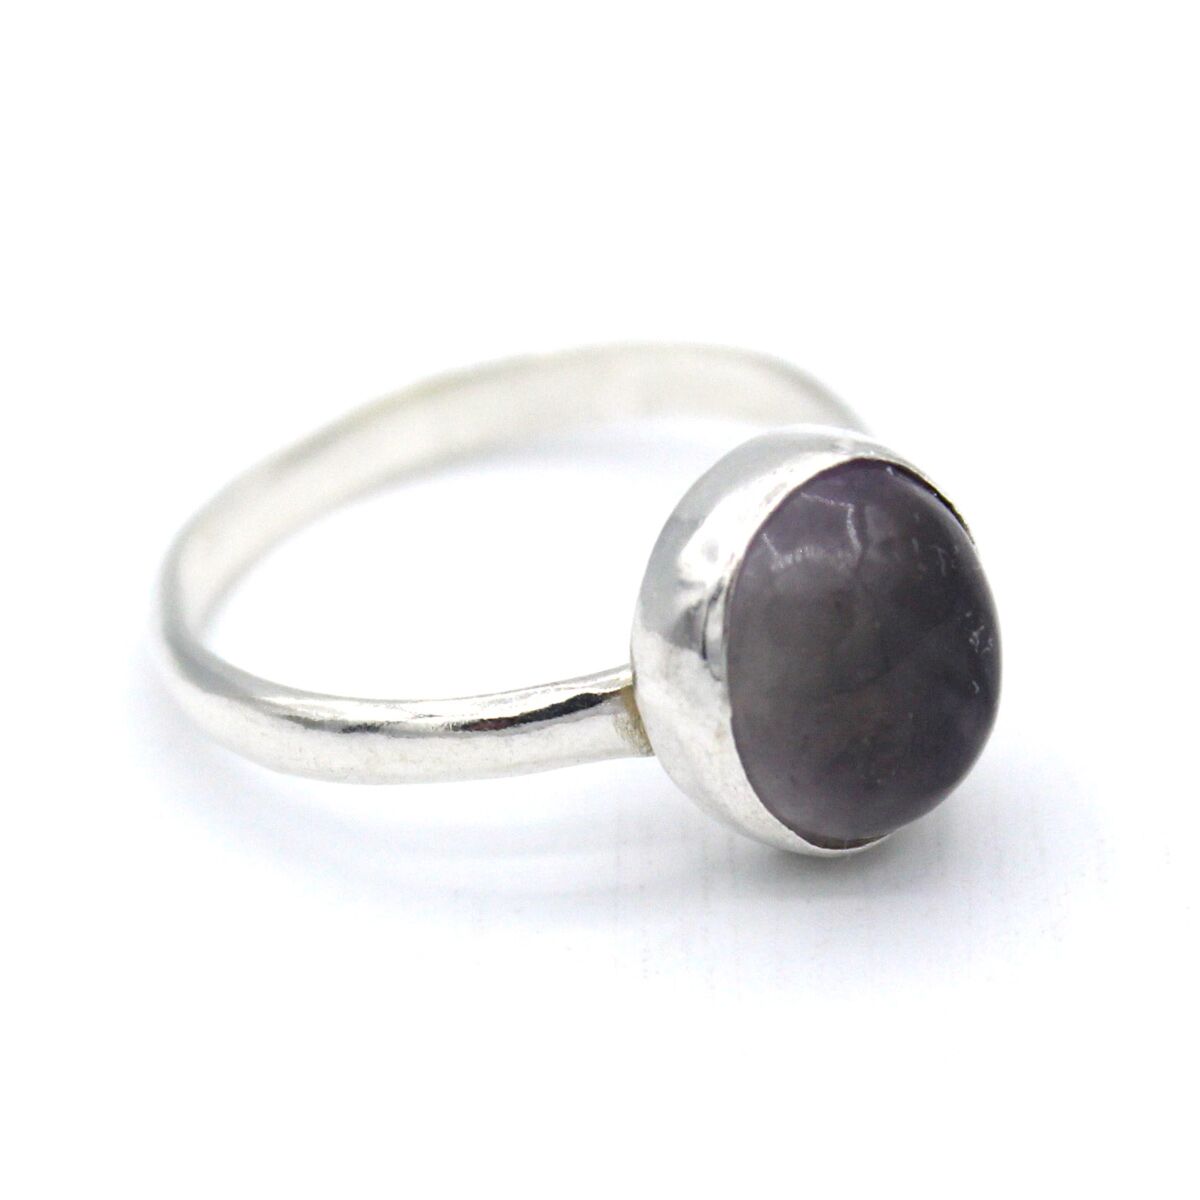 Rare Quartz Made Ring | High-Quality Silver Ring